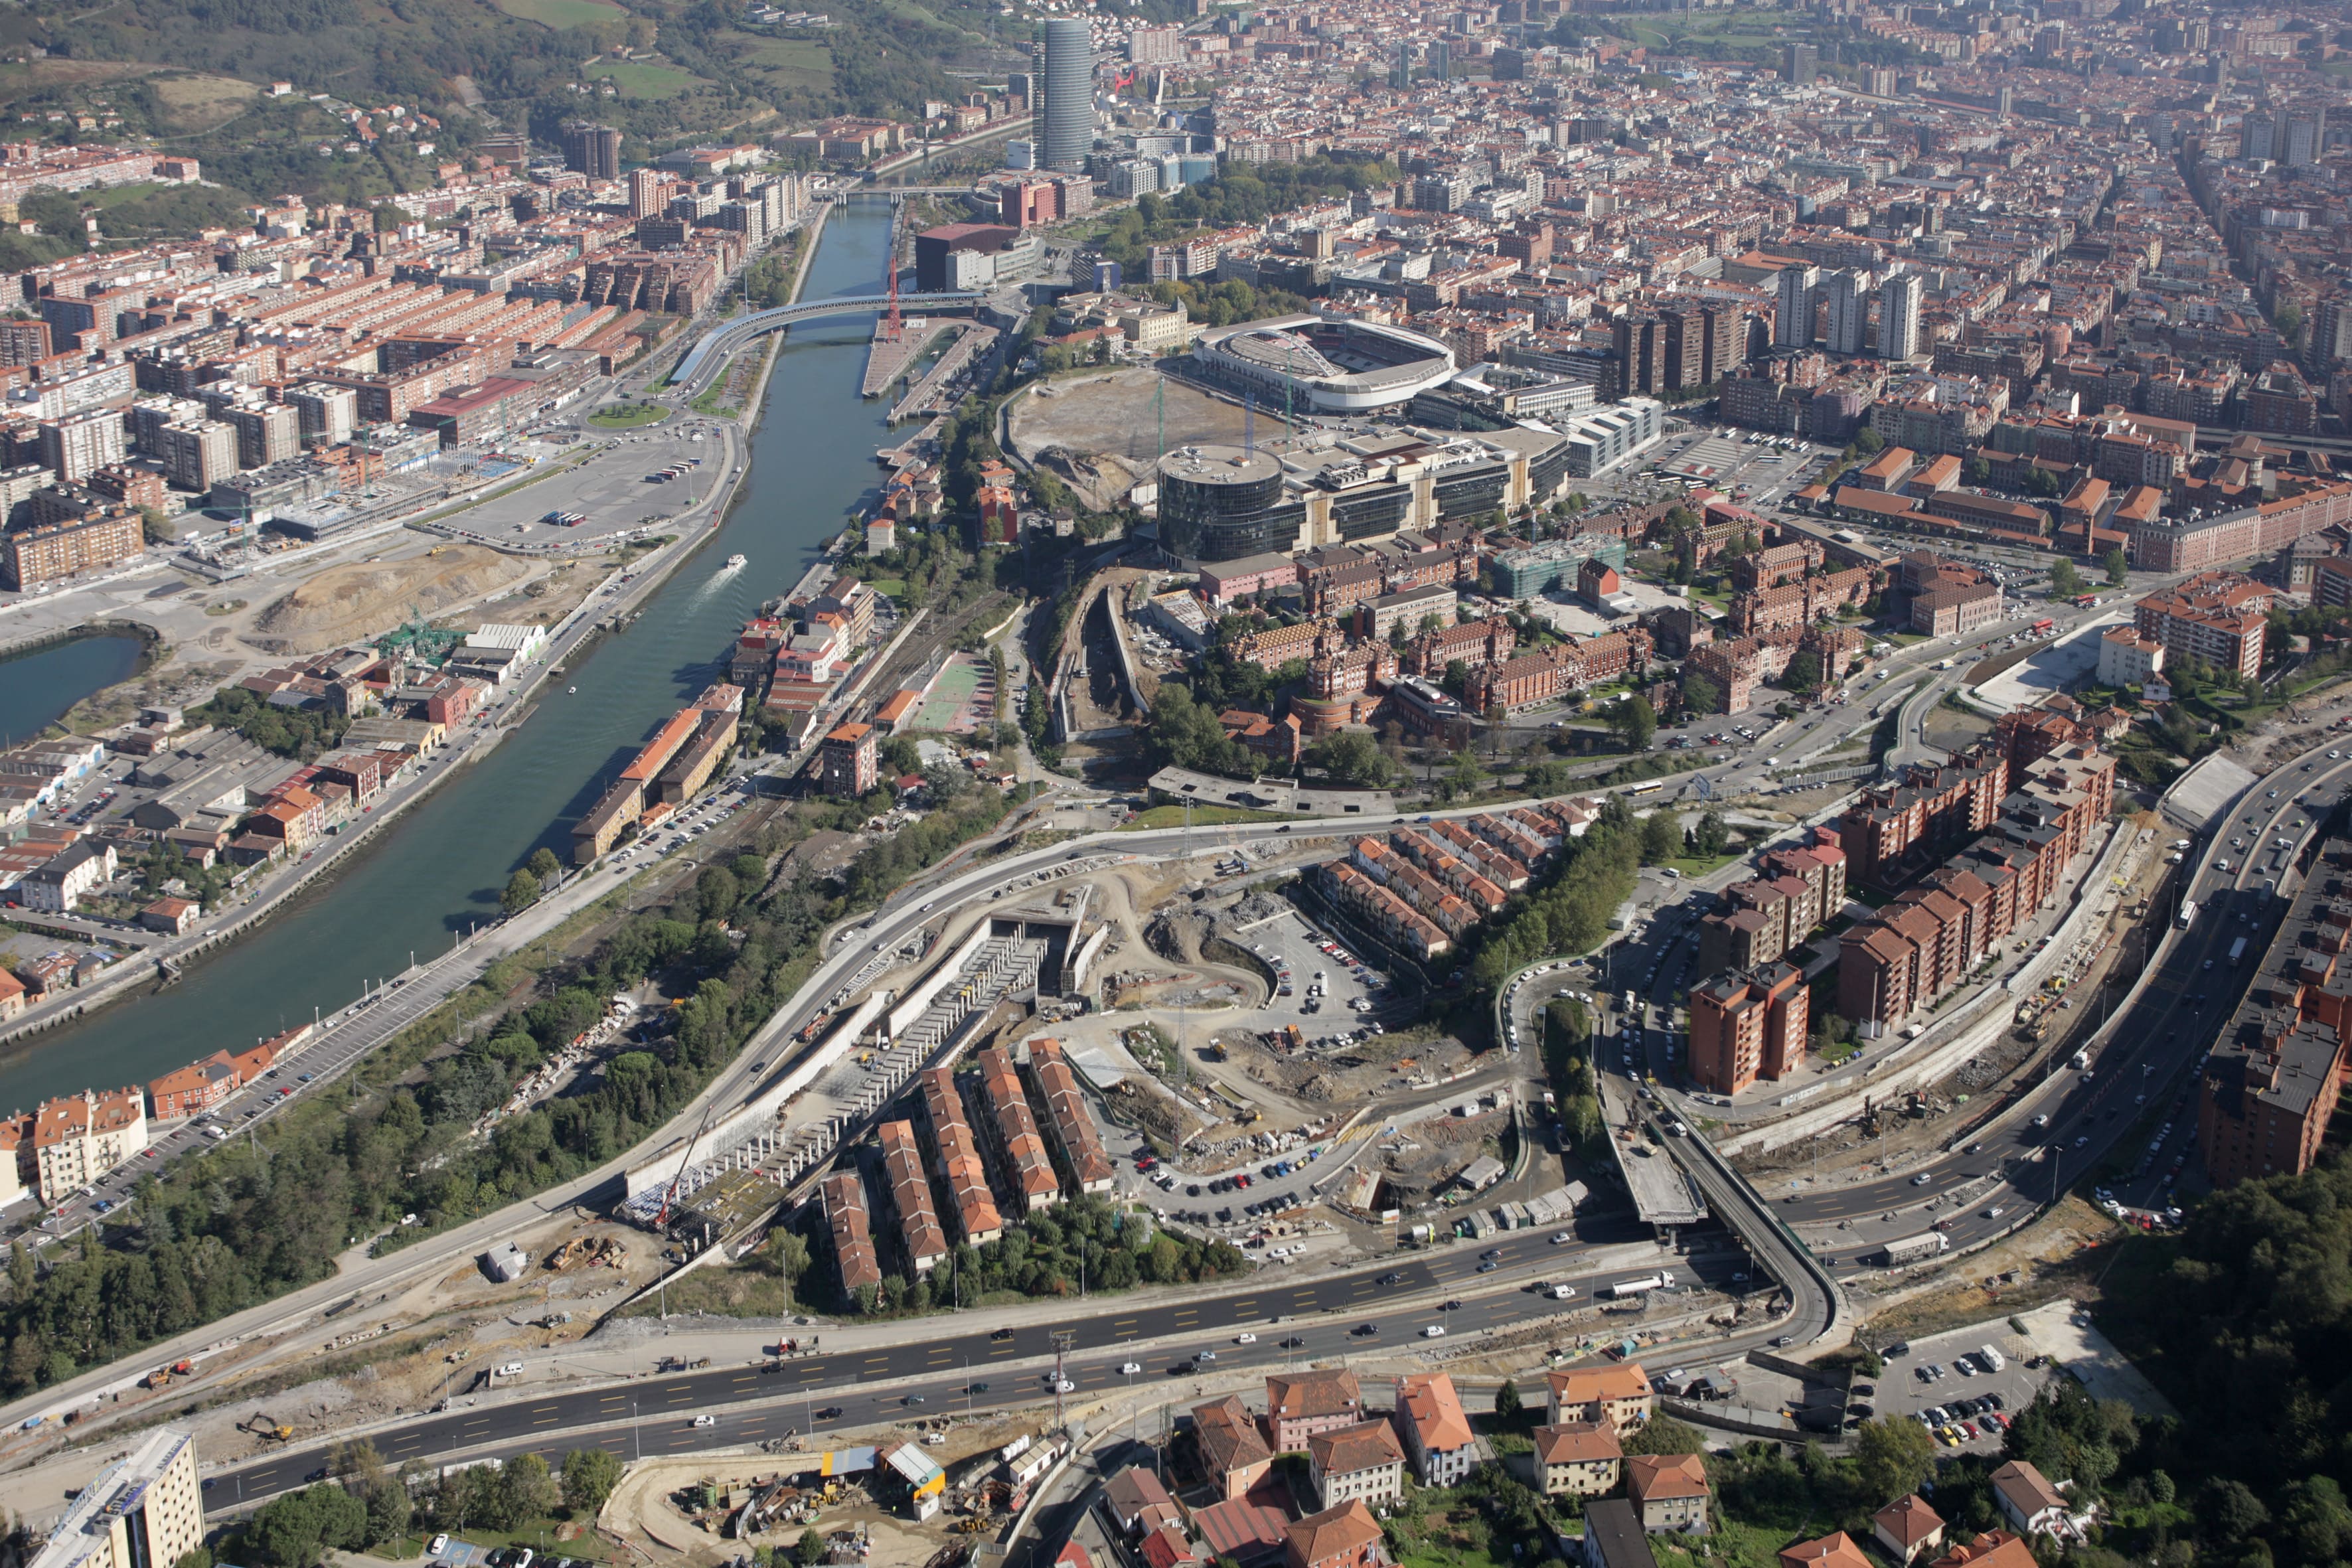 Image 5 of Access to Bilbao via San Mamés